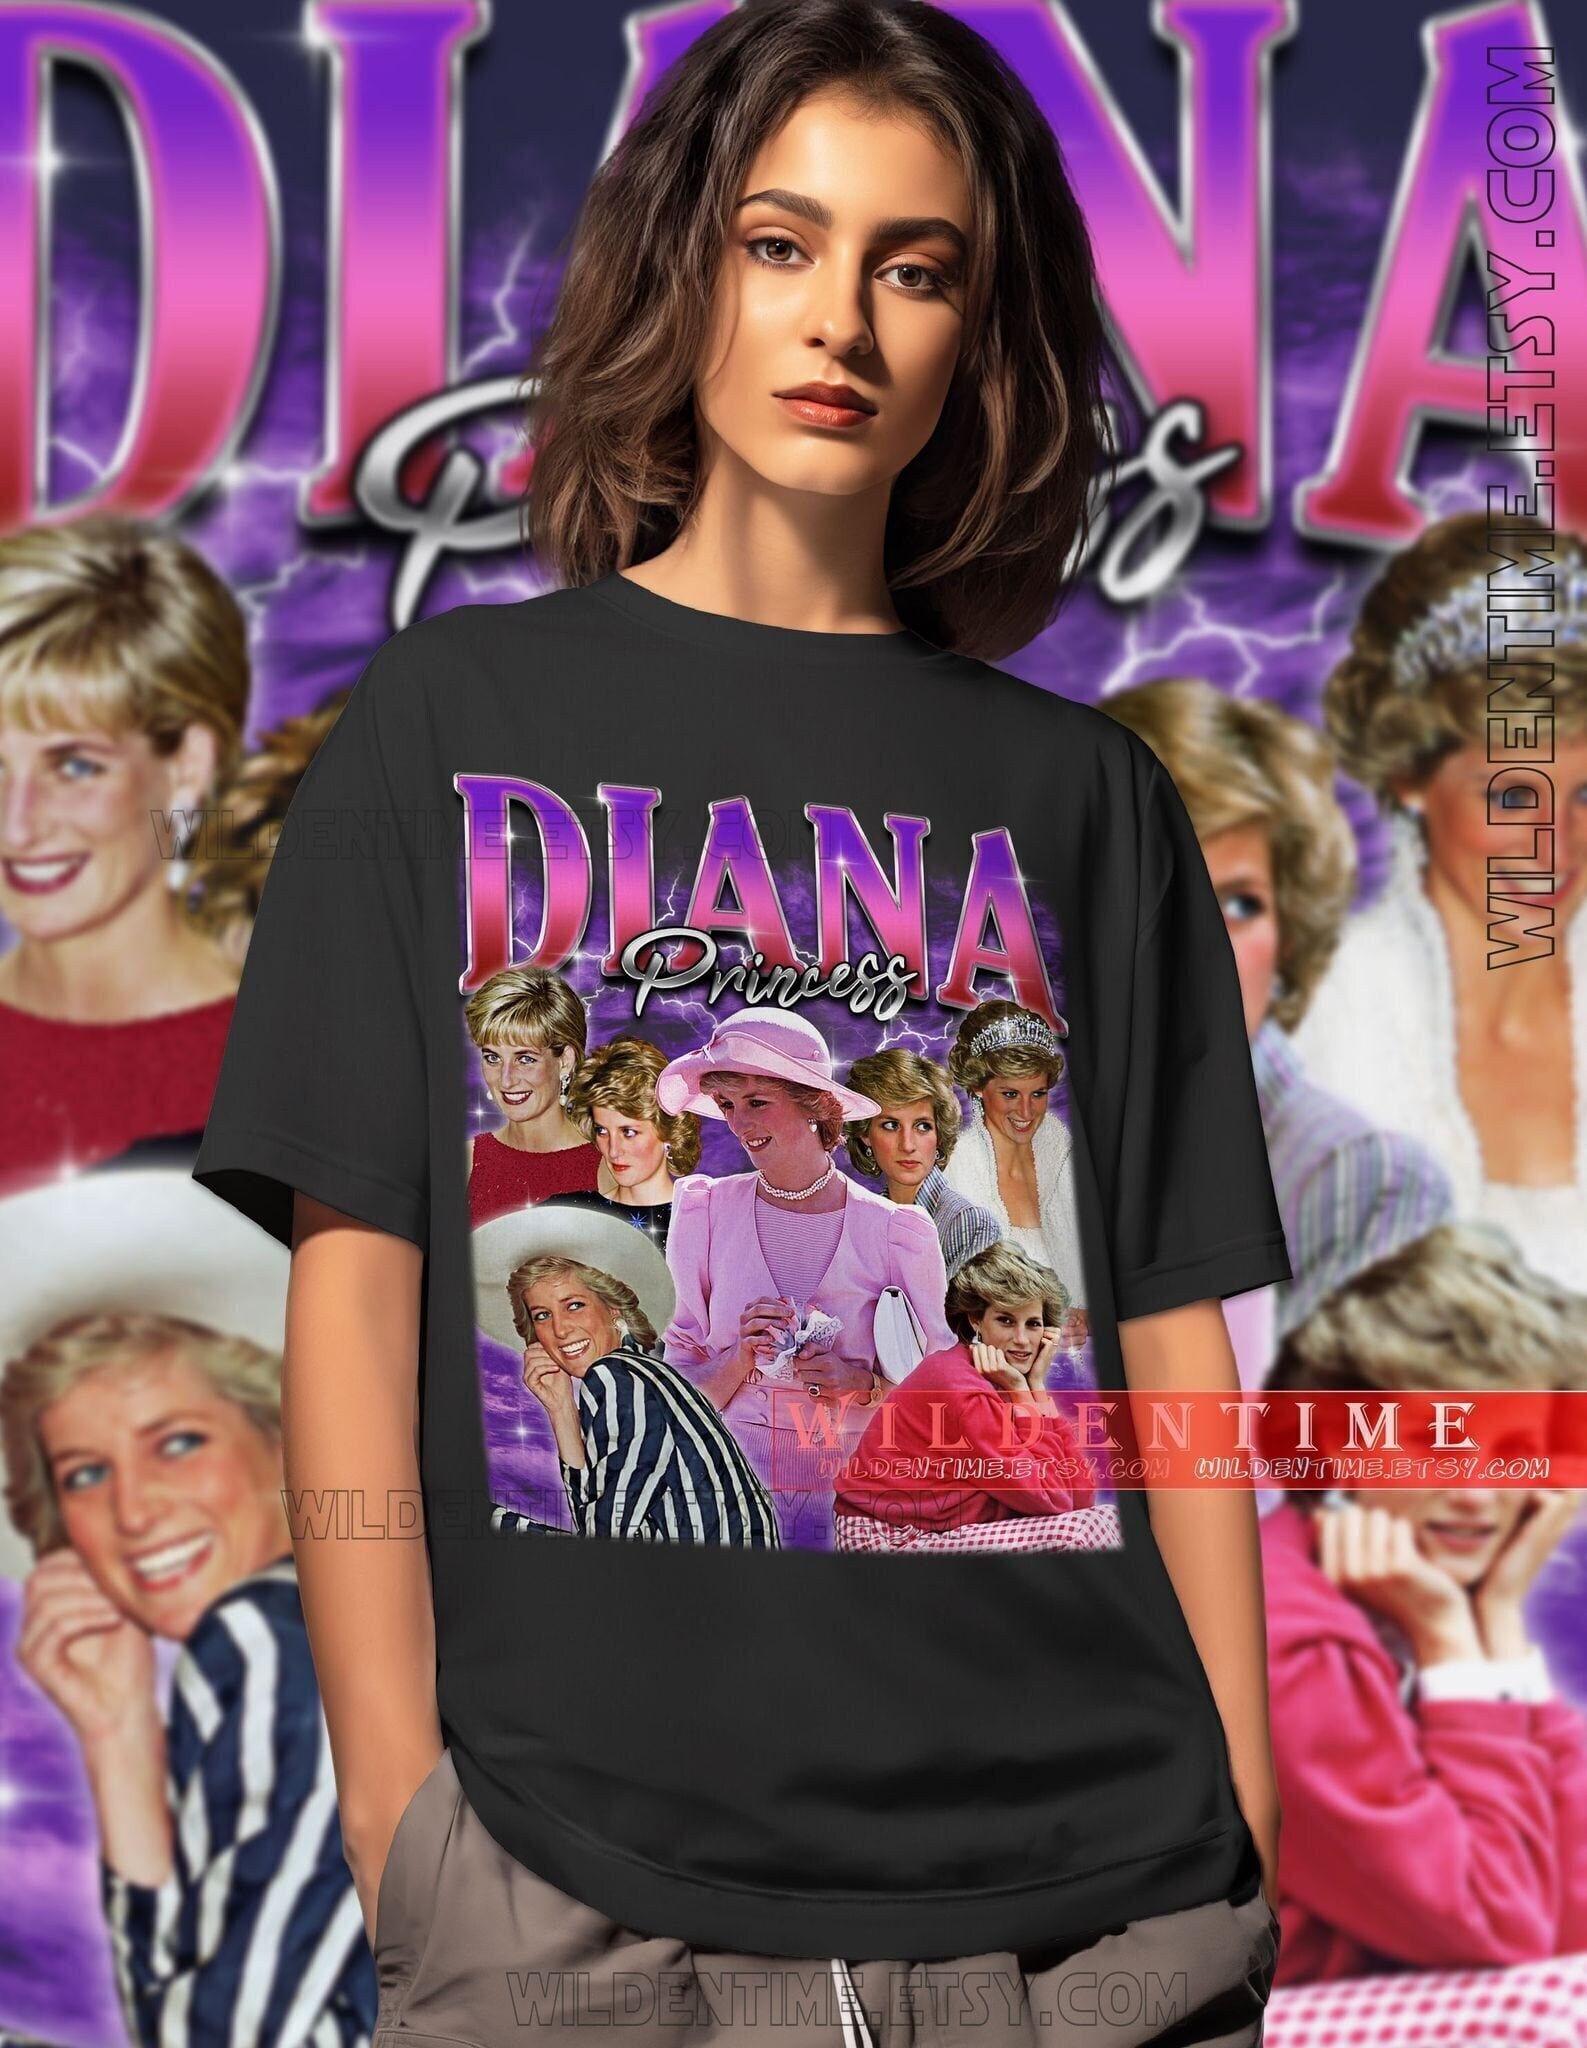 Vintage Princess Diana Shirt, Retro Princess Diana Shirt